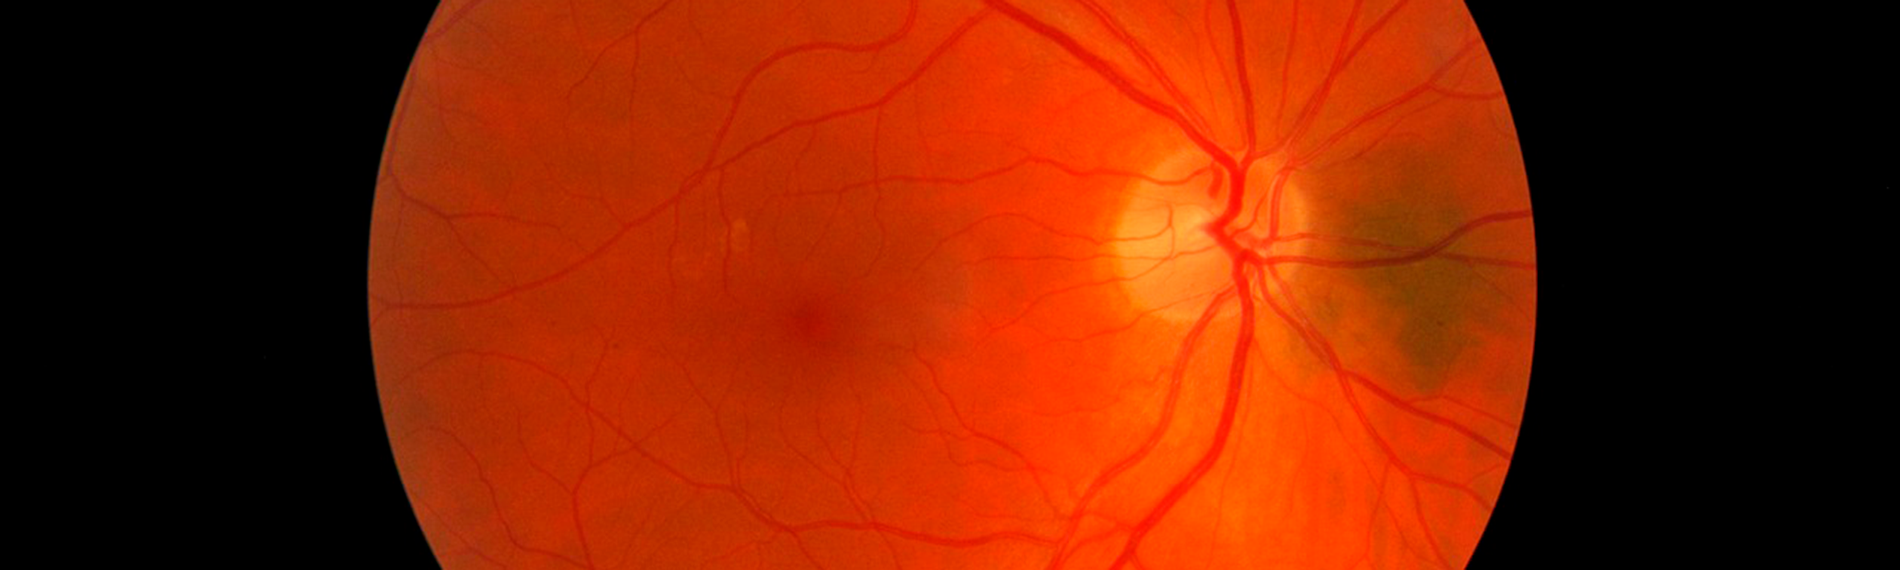 desprendimiento de retina signos